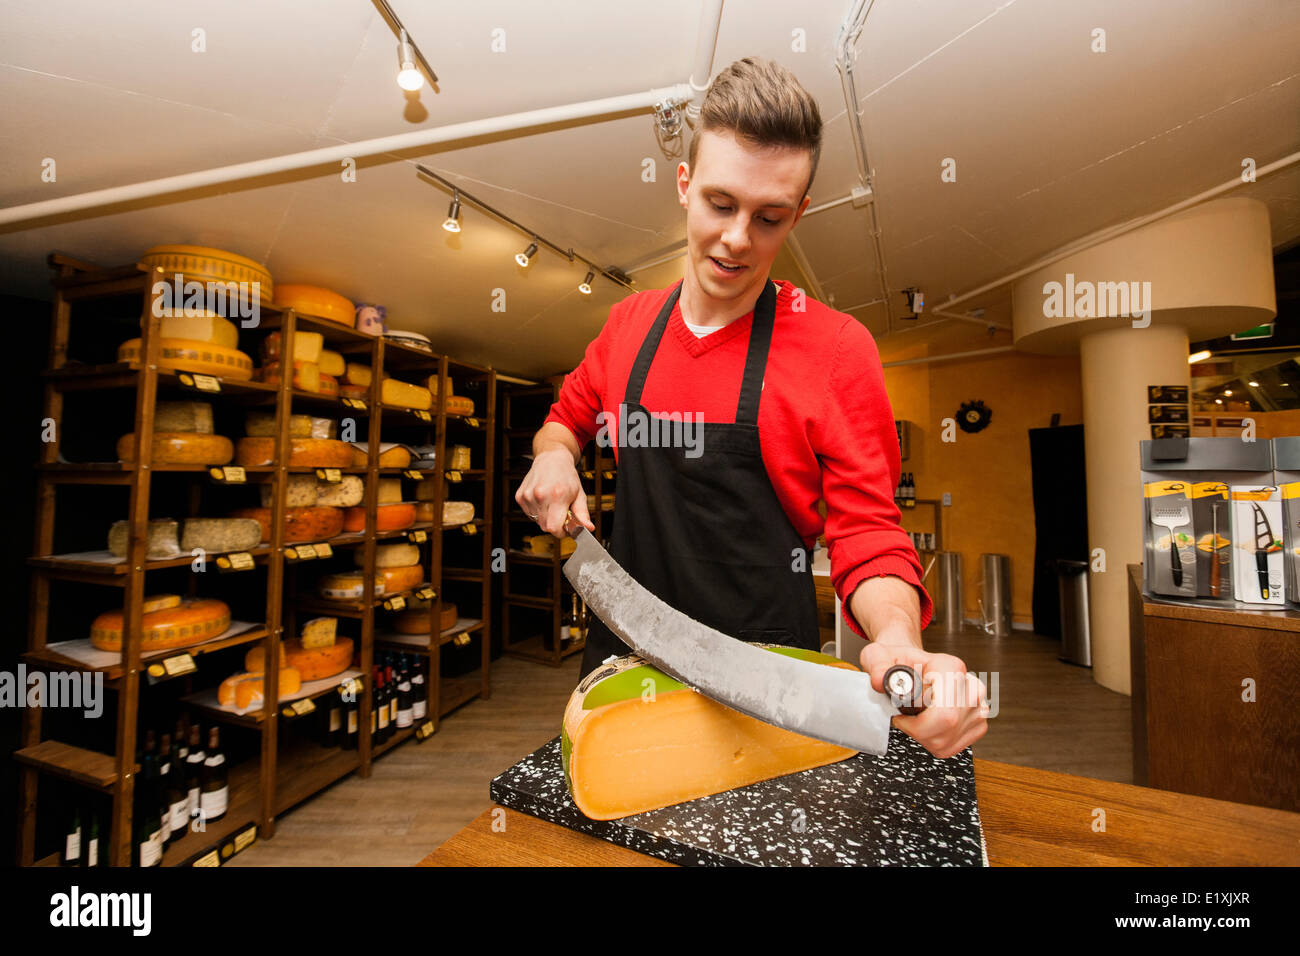 Junge speichern Angestellte schneiden Käse am Schalter Stockfoto